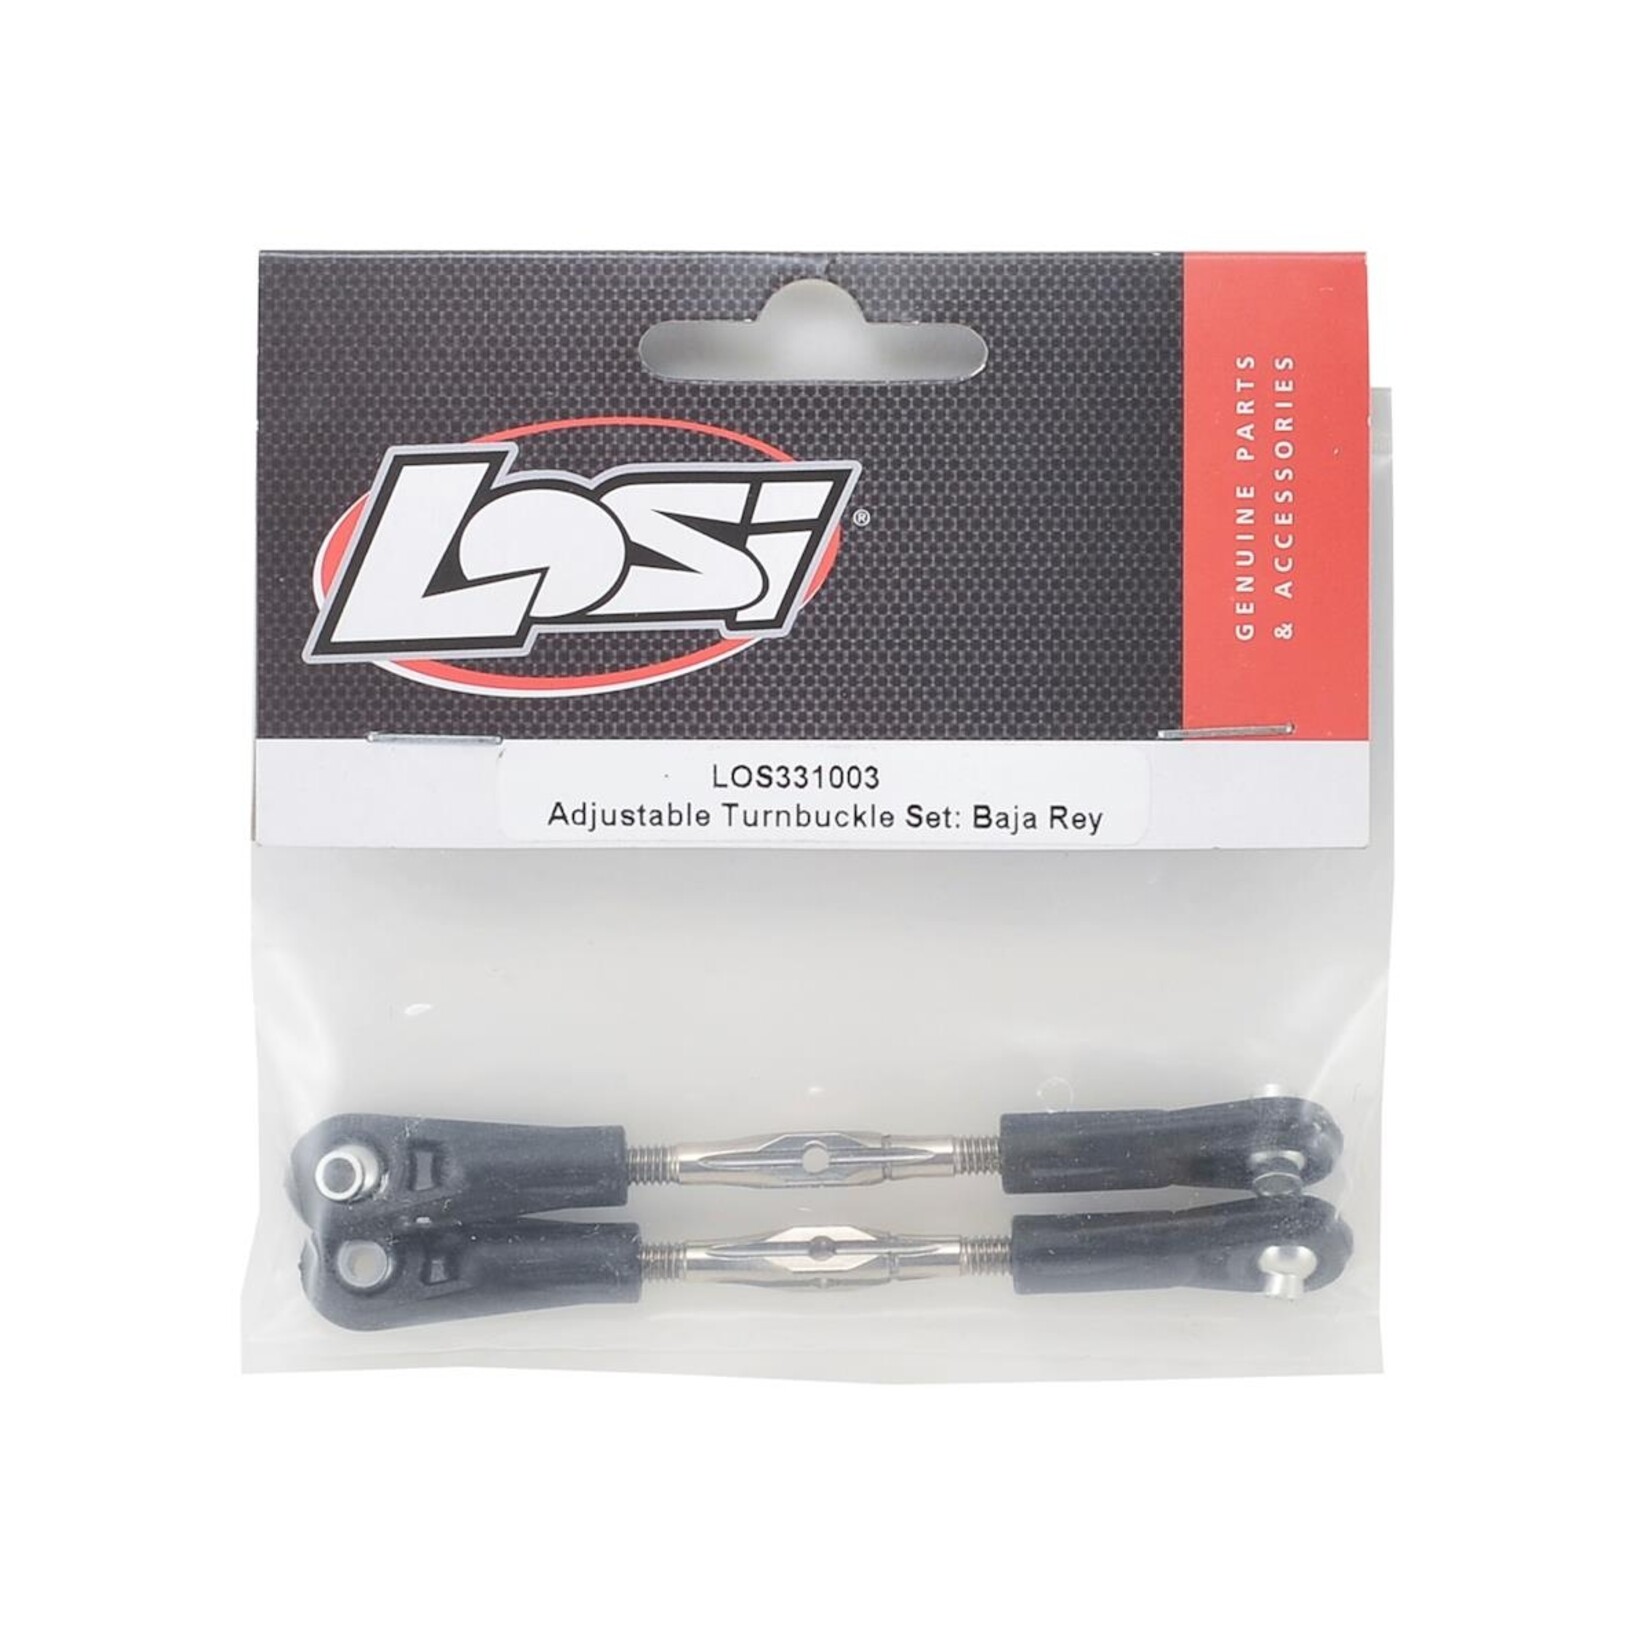 Losi Losi Baja Rey Adjustable Turnbuckle Set #LOS331003